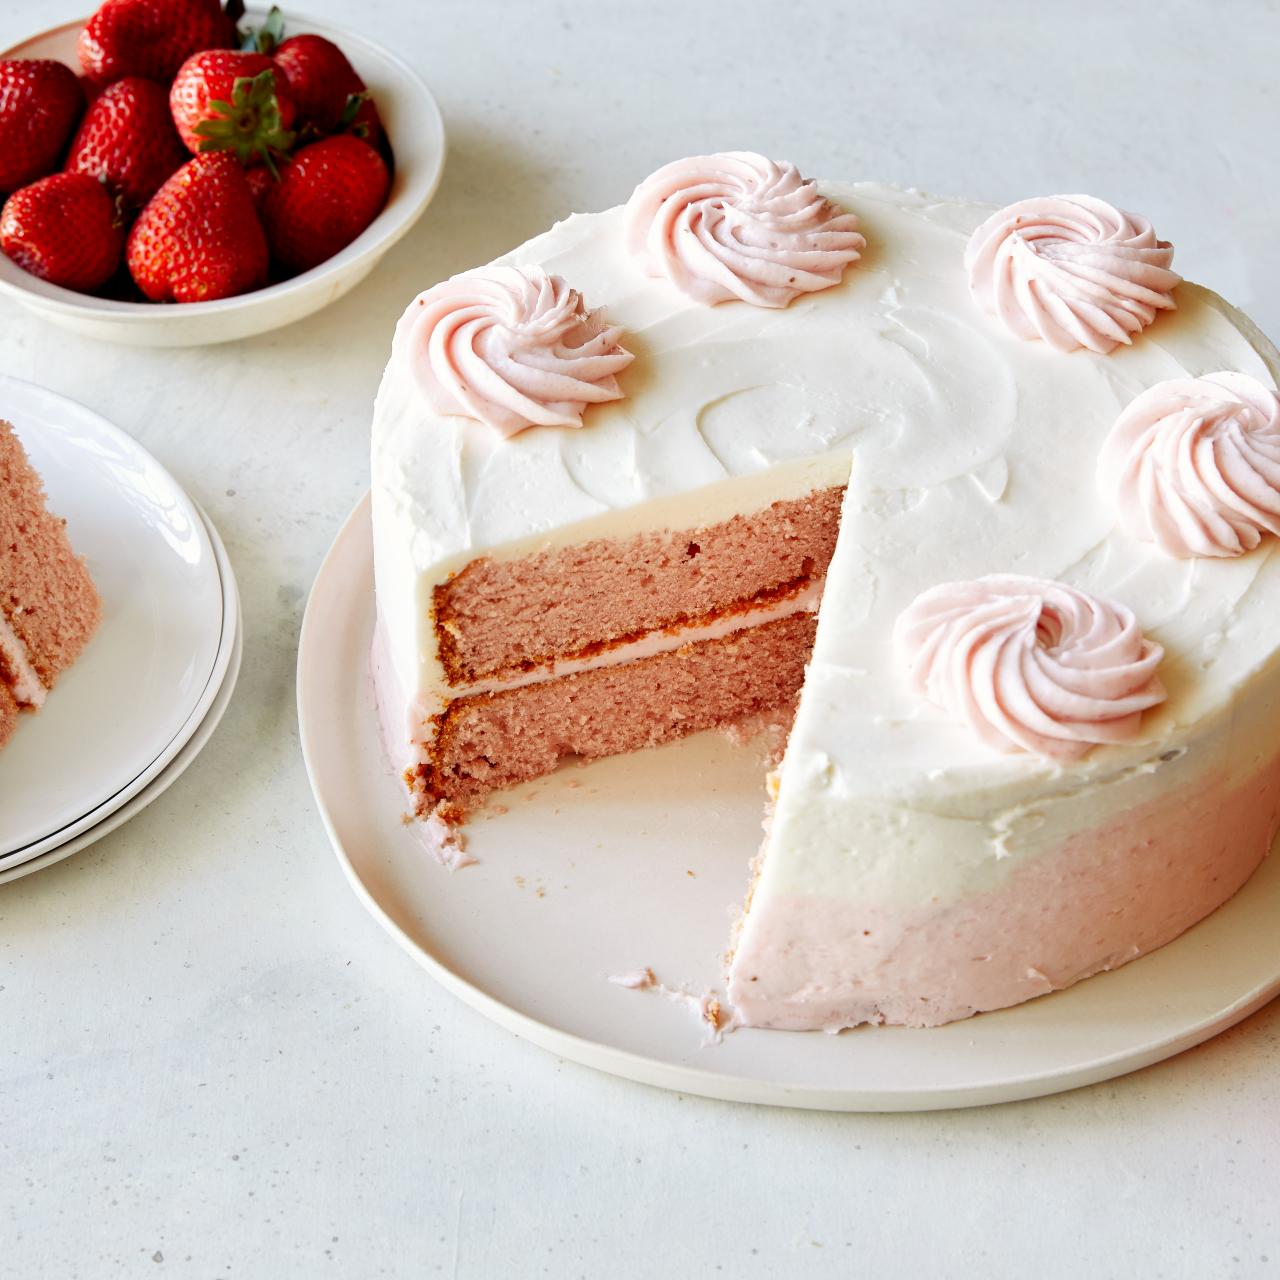 Strawberry Ice Cream Cake – Leland gal